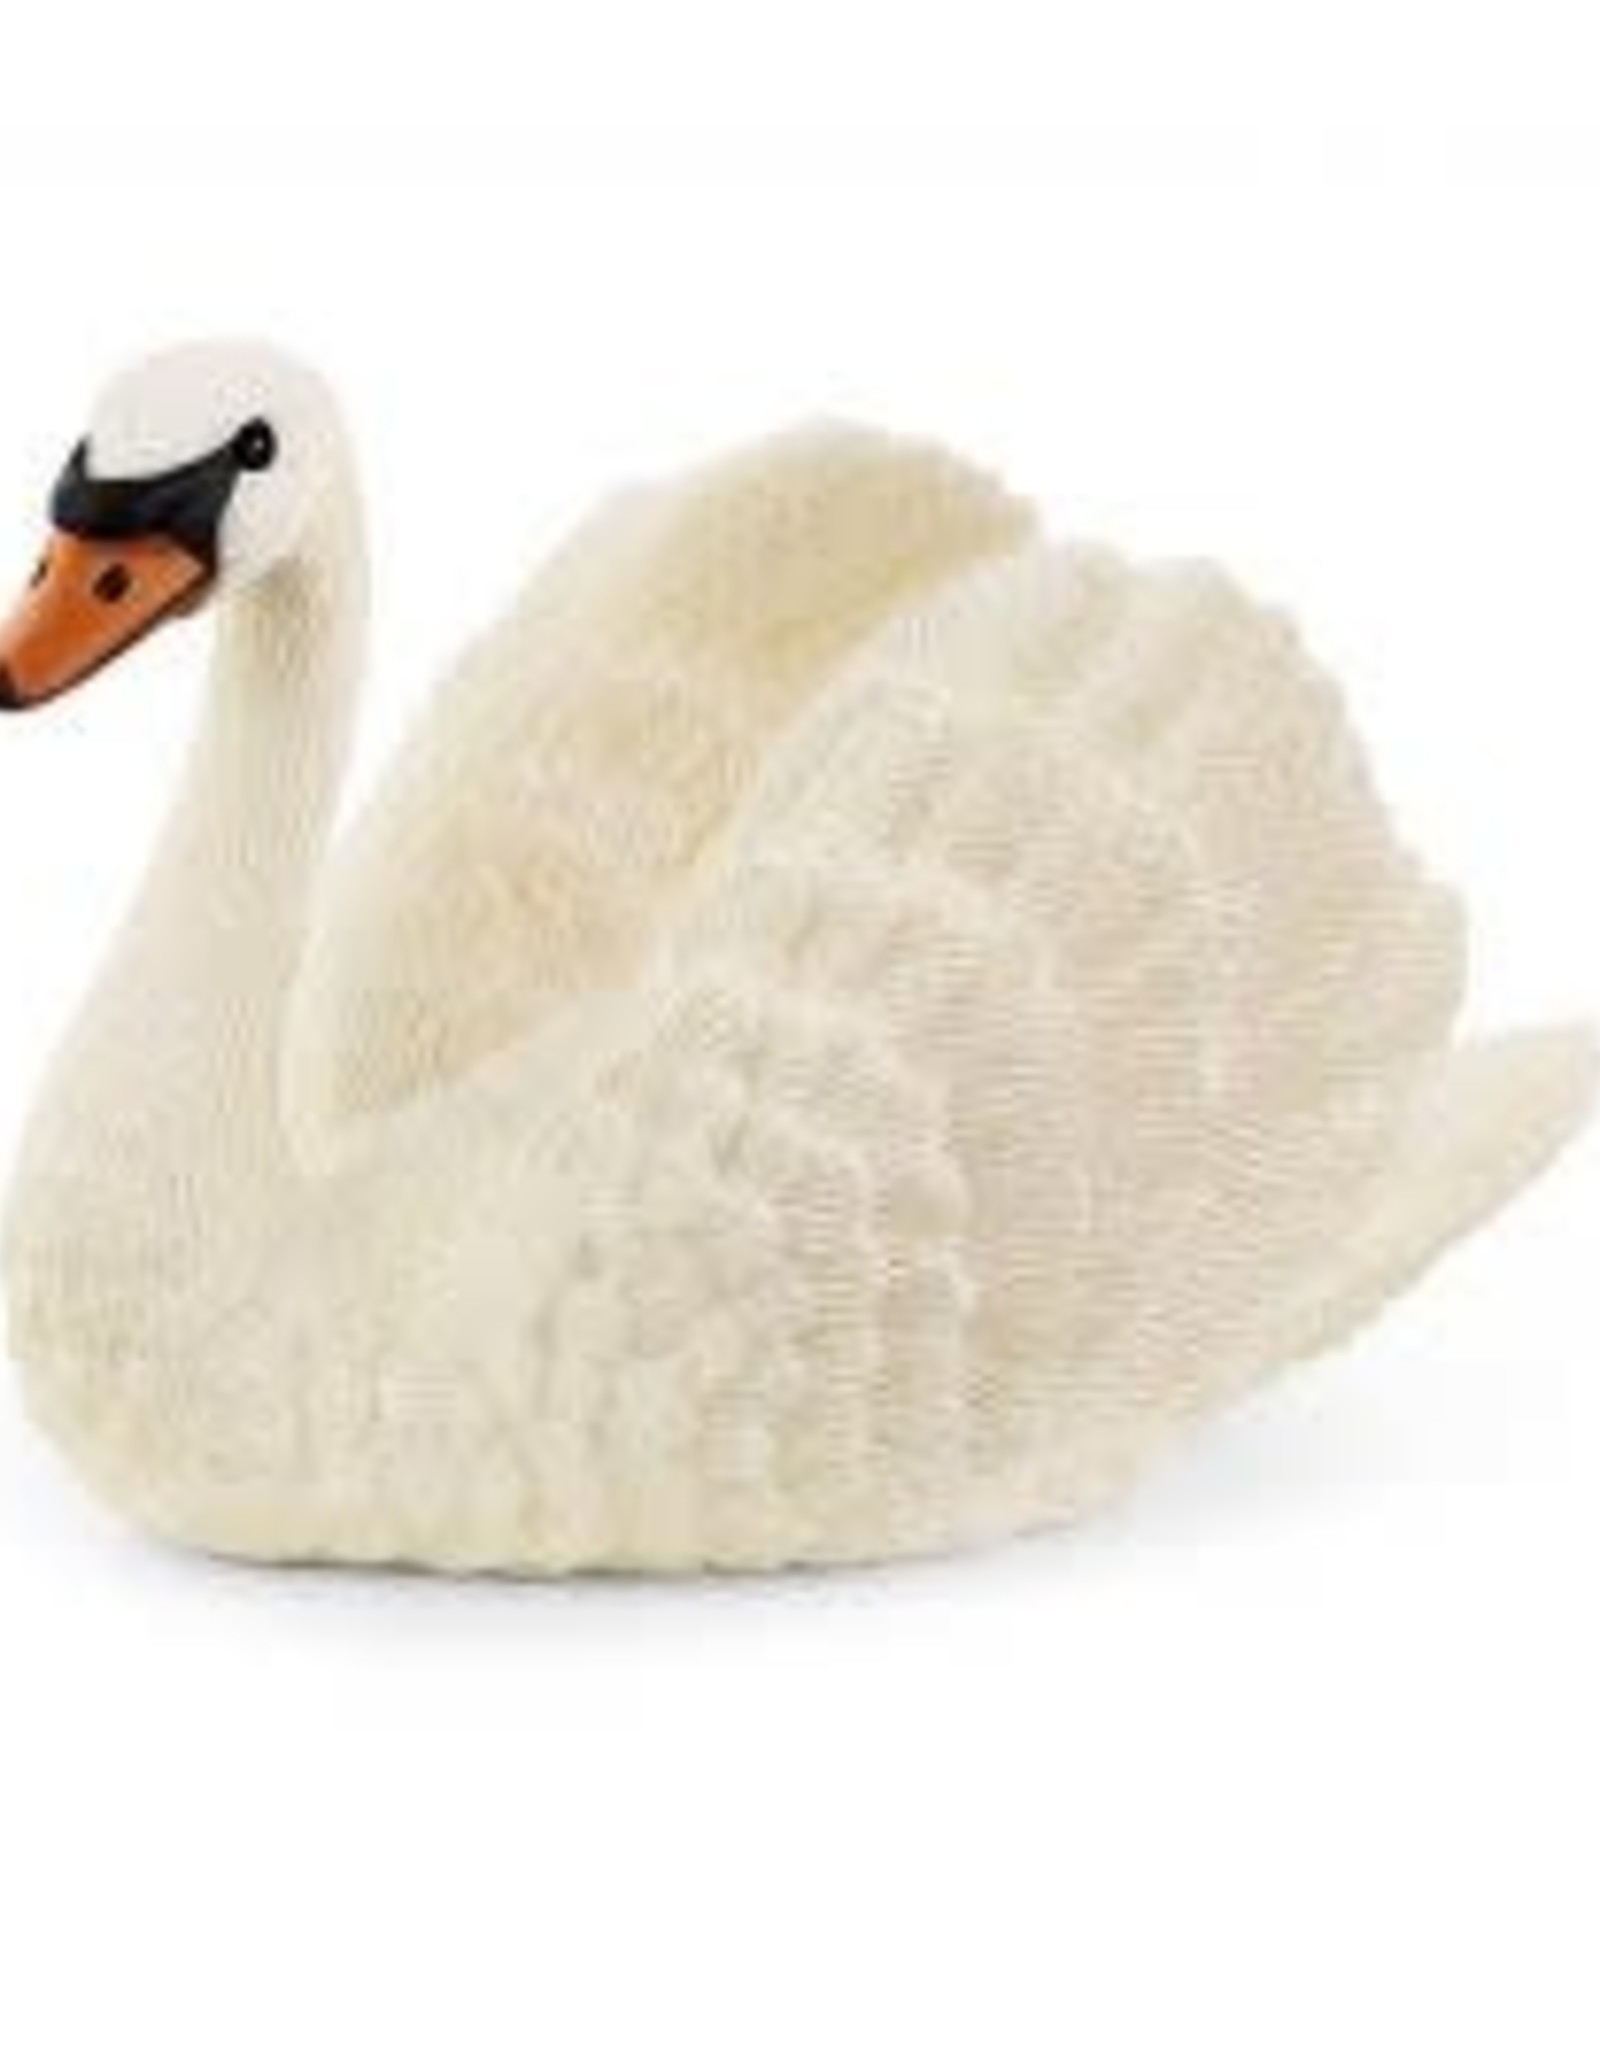 Schleich Swan 13921